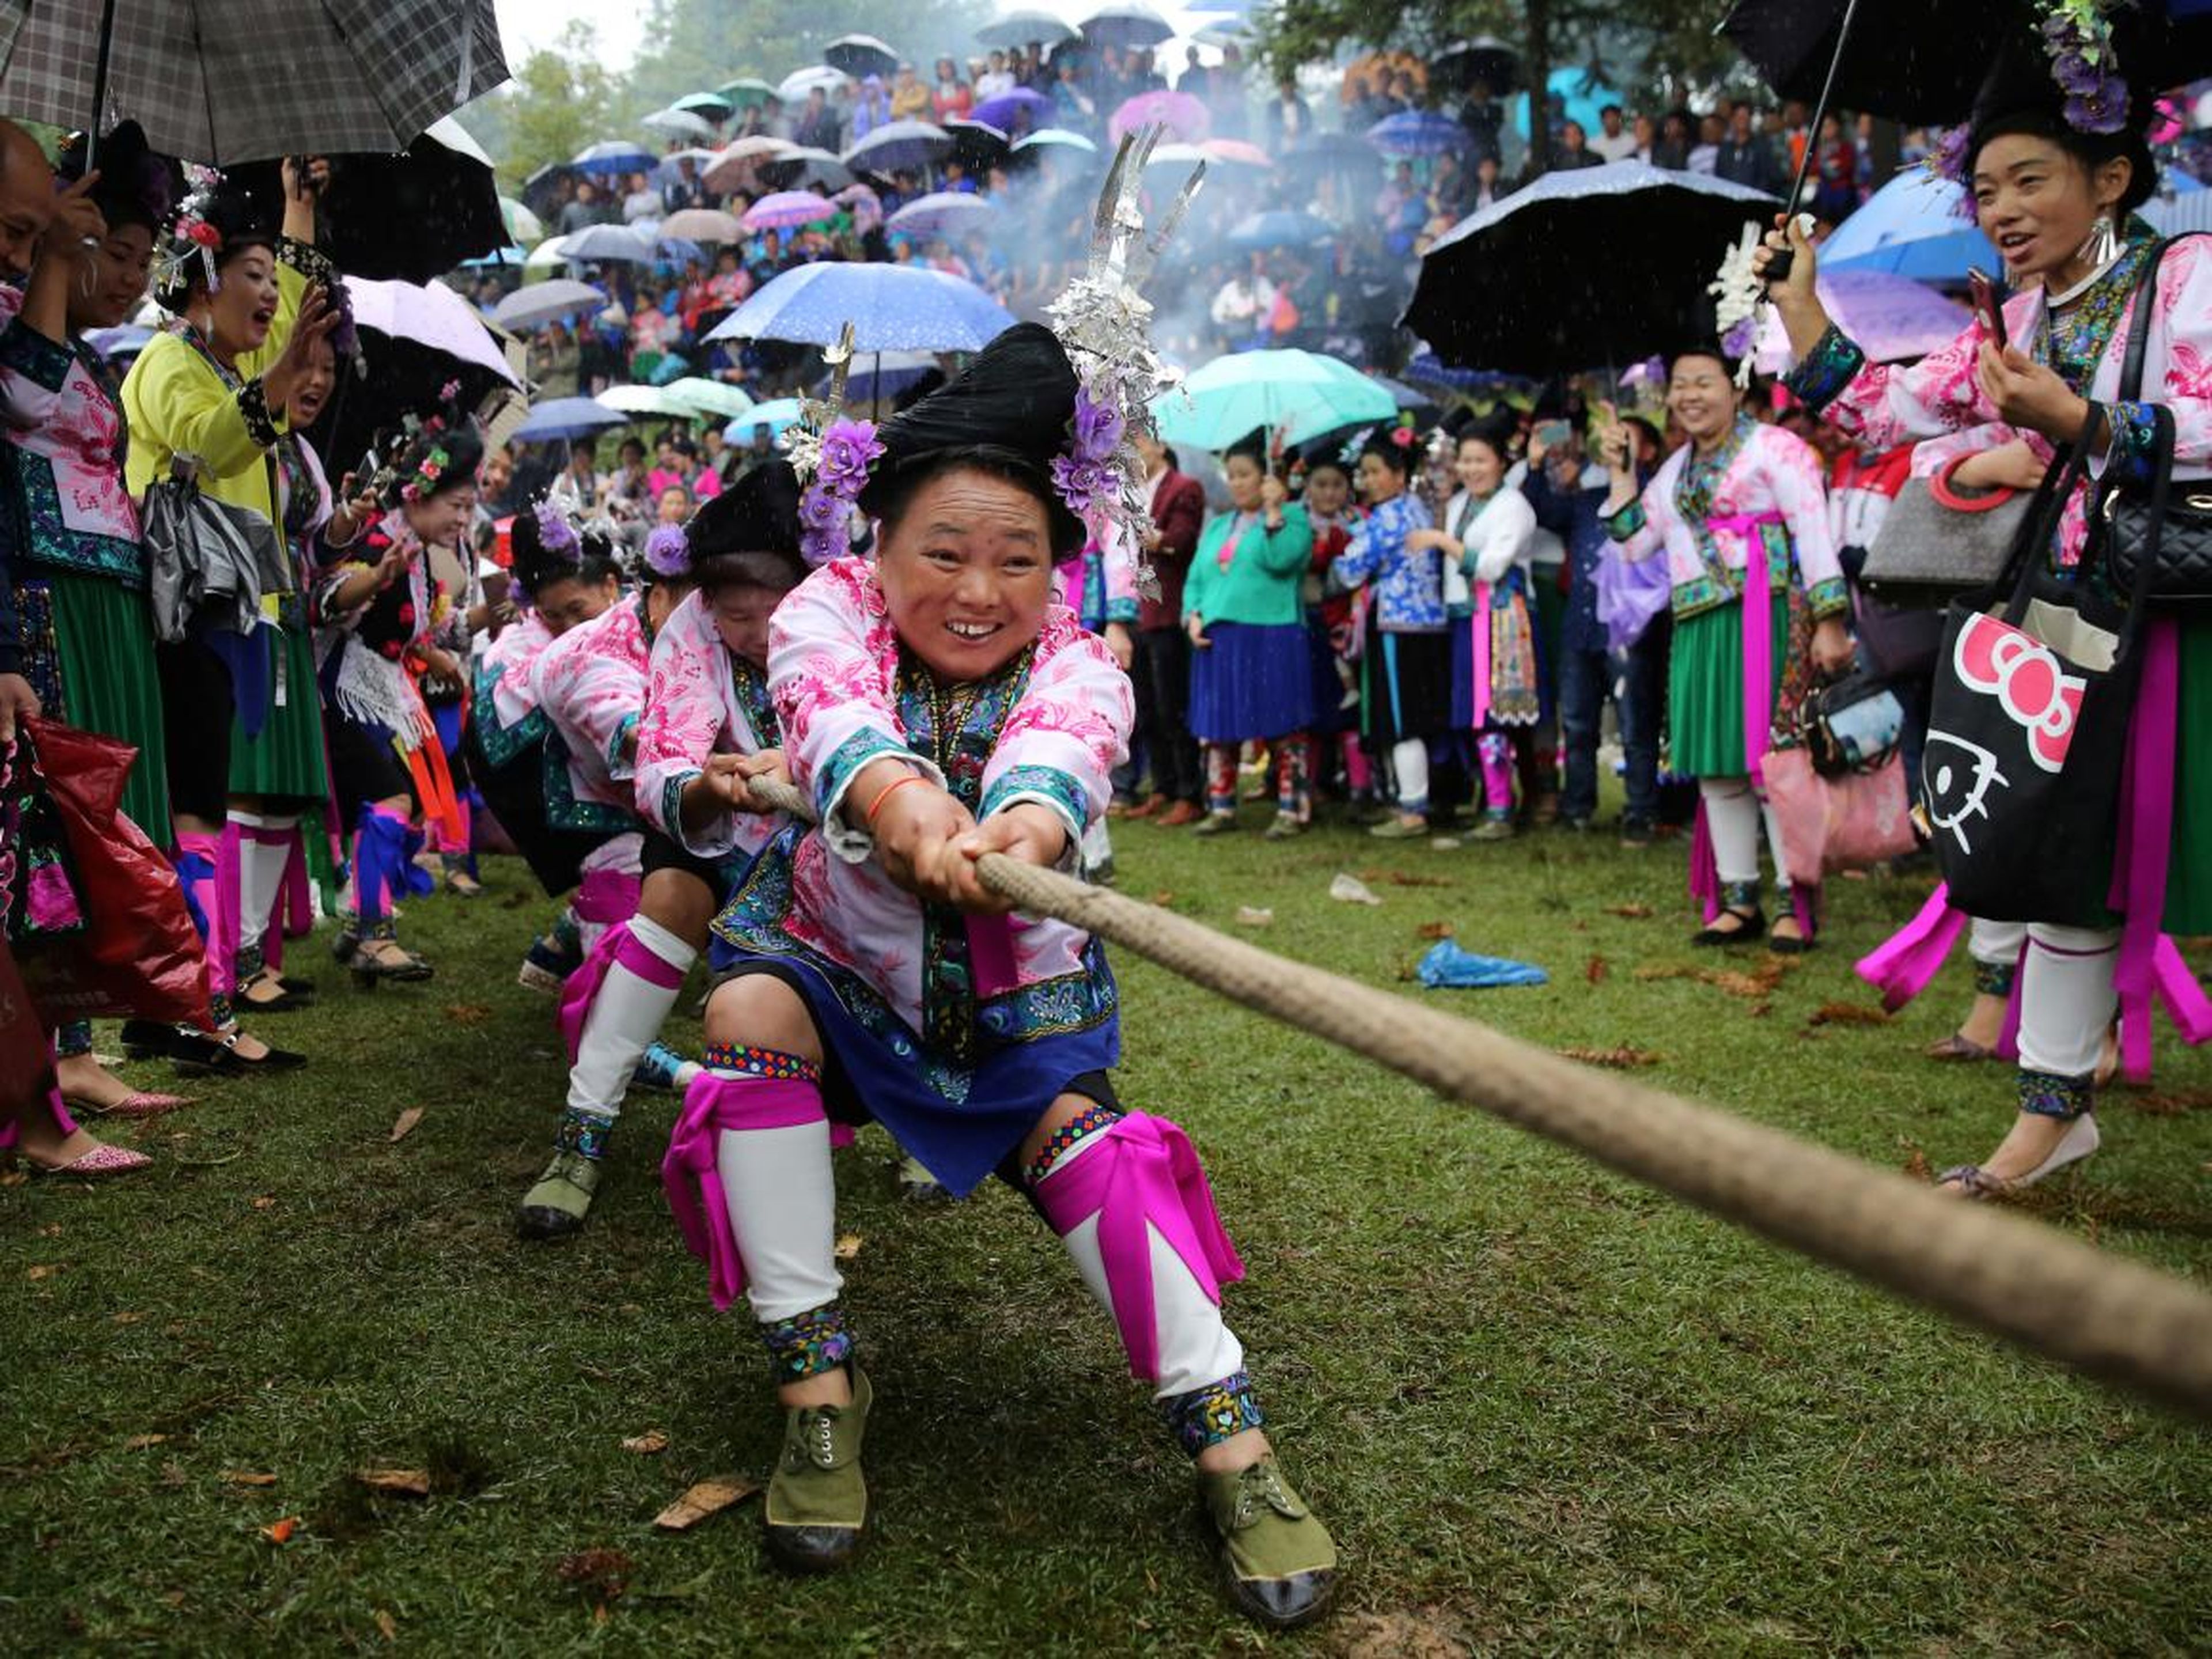 Las mujeres de etnia miao con trajes tradicionales participan en un tira y afloja para celebrar un festival local en una aldea en el condado autónomo Miao de Rongshui, región autónoma de Guangxi Zhuang, China.